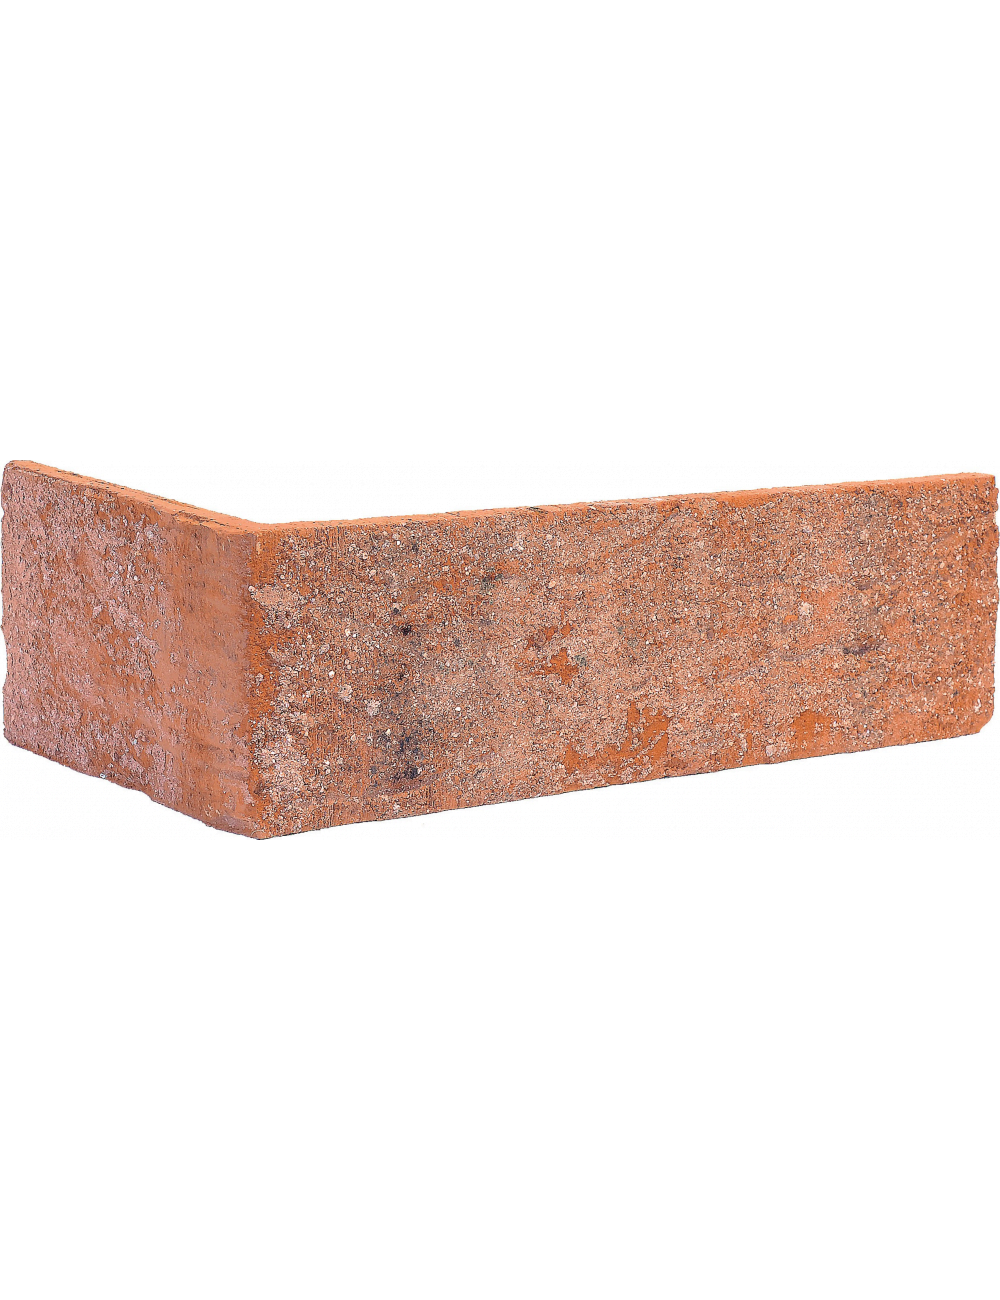 Colțar ceramic Klinker - Asuan (Brick Street) (HF05) 115/240X71X10